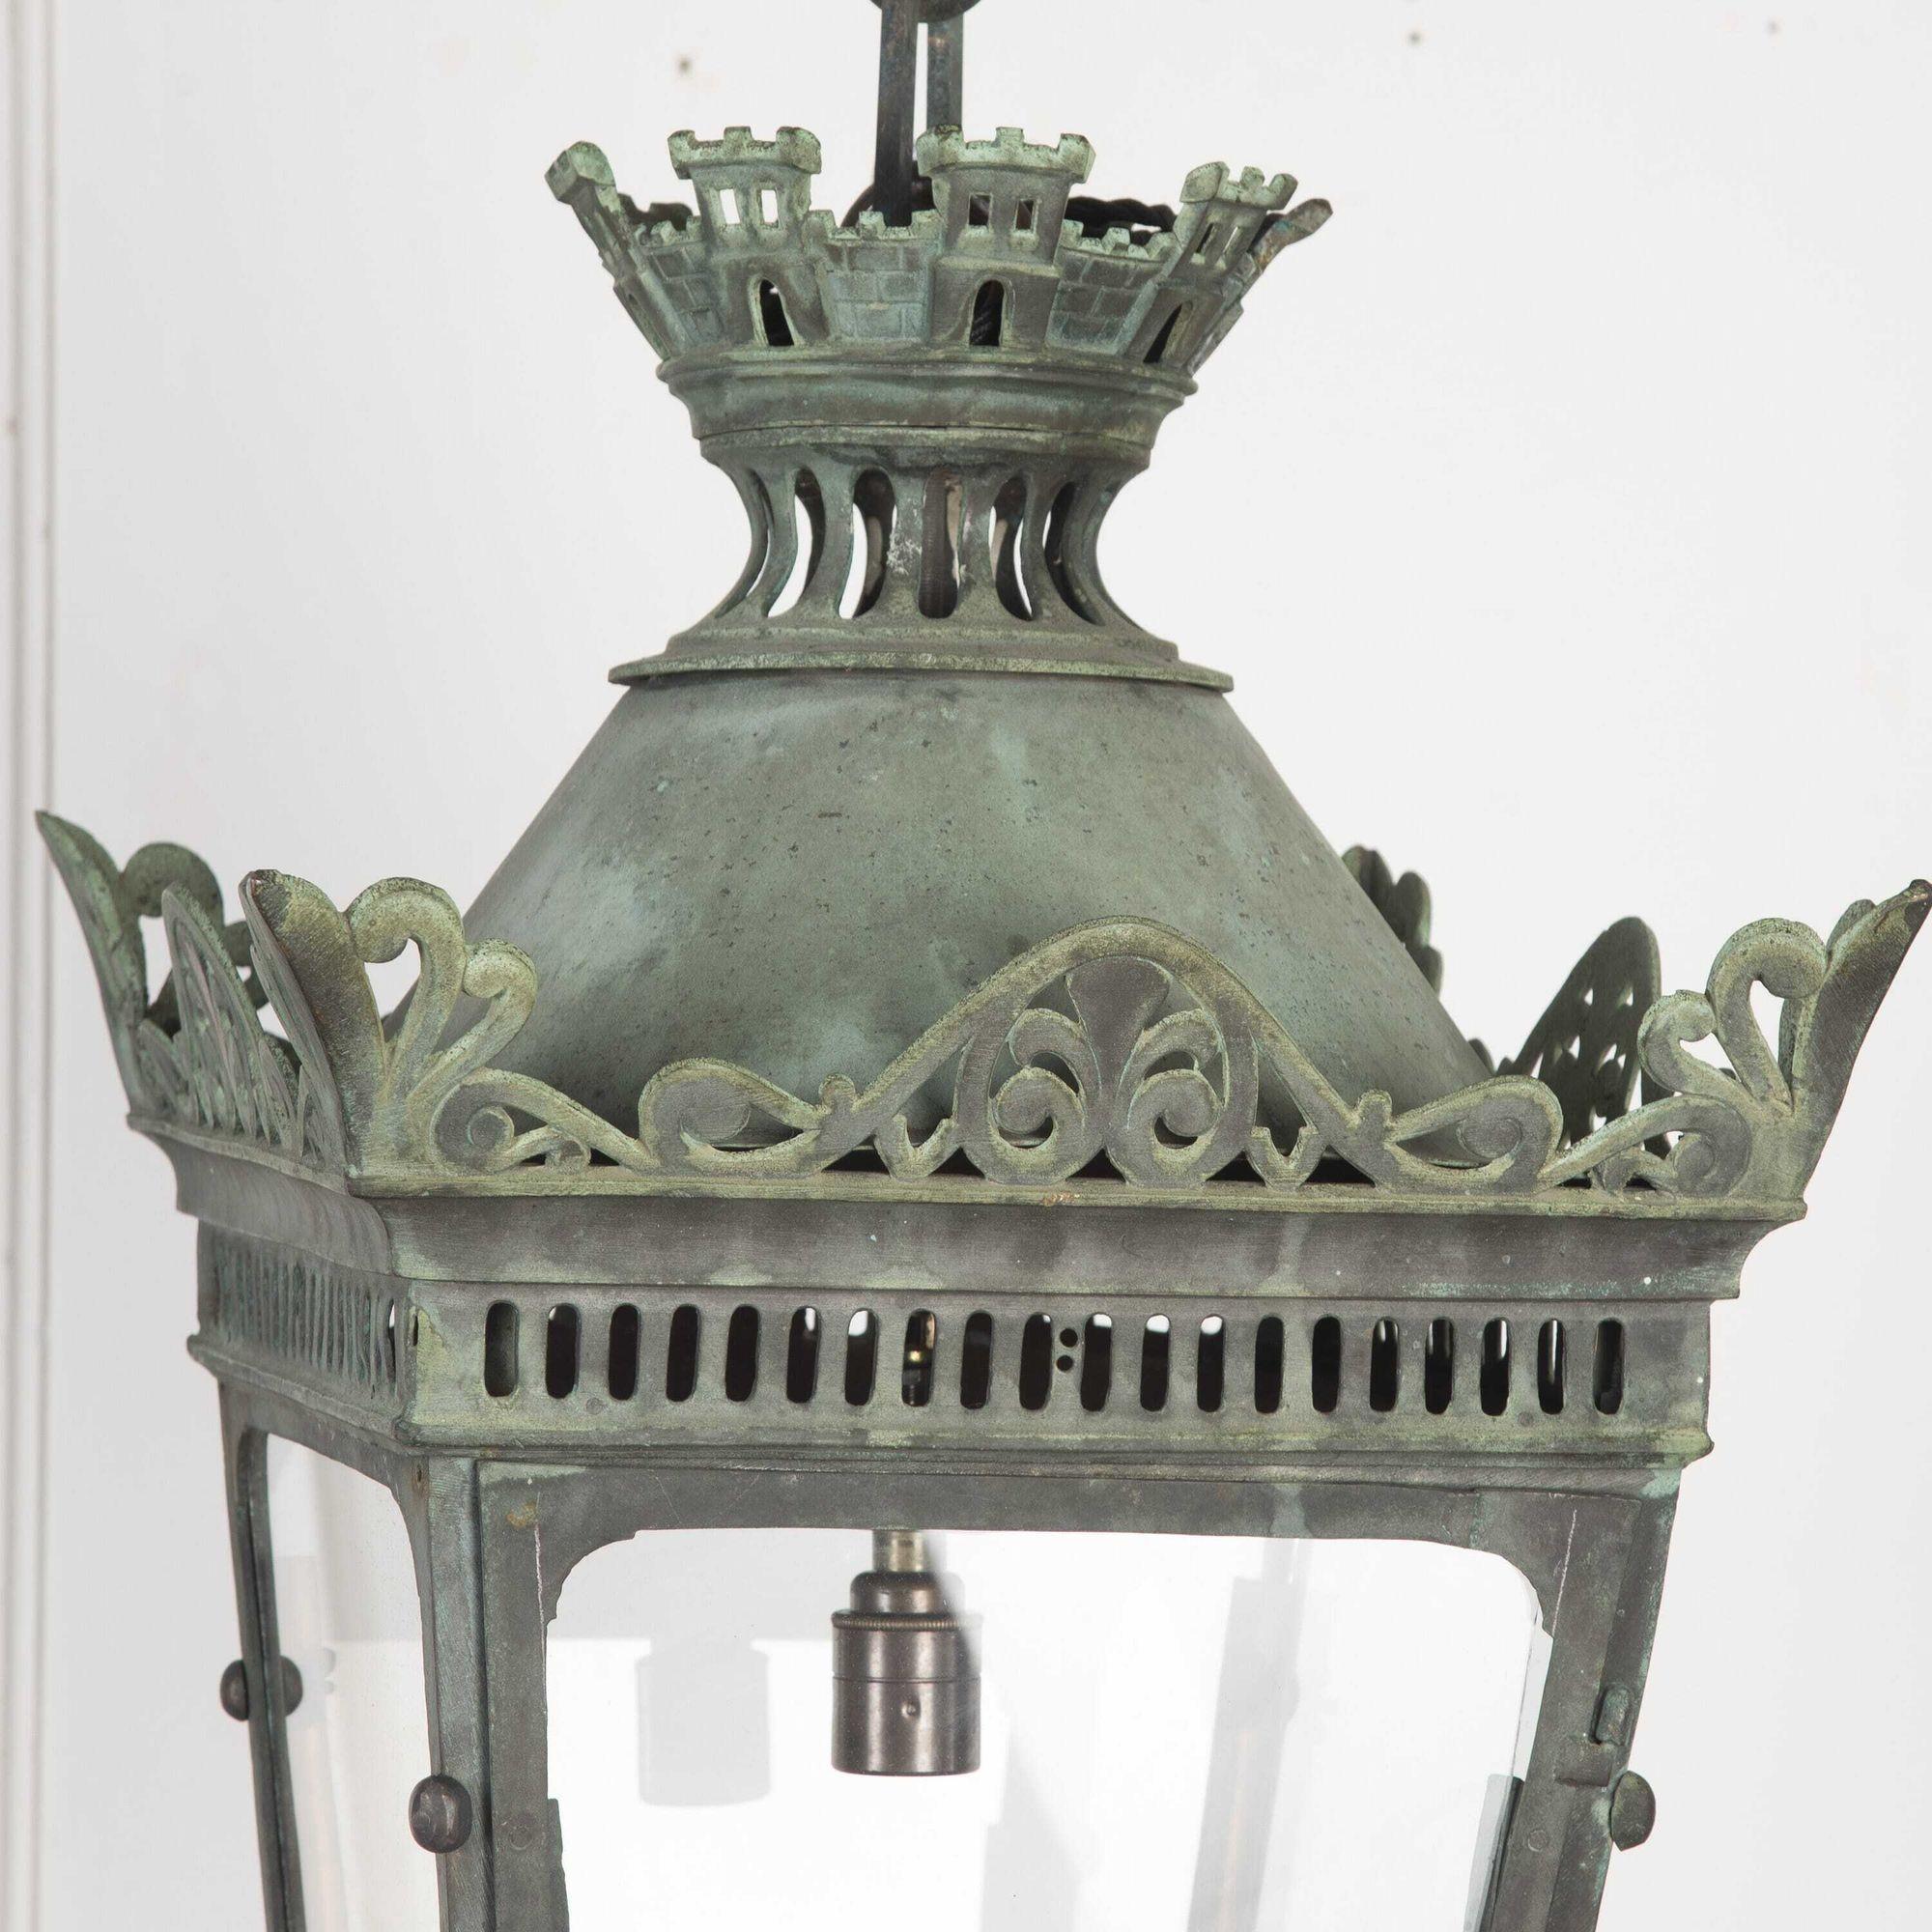 Fantastique lanterne suspendue en cuivre vert-de-gris français de la fin du 19e siècle avec chaîne.
Il s'agit d'une fabuleuse lanterne en cuivre vert-de-gris entièrement émaillée, dotée d'un magnifique cadre percé et d'une tourelle avec une chaîne